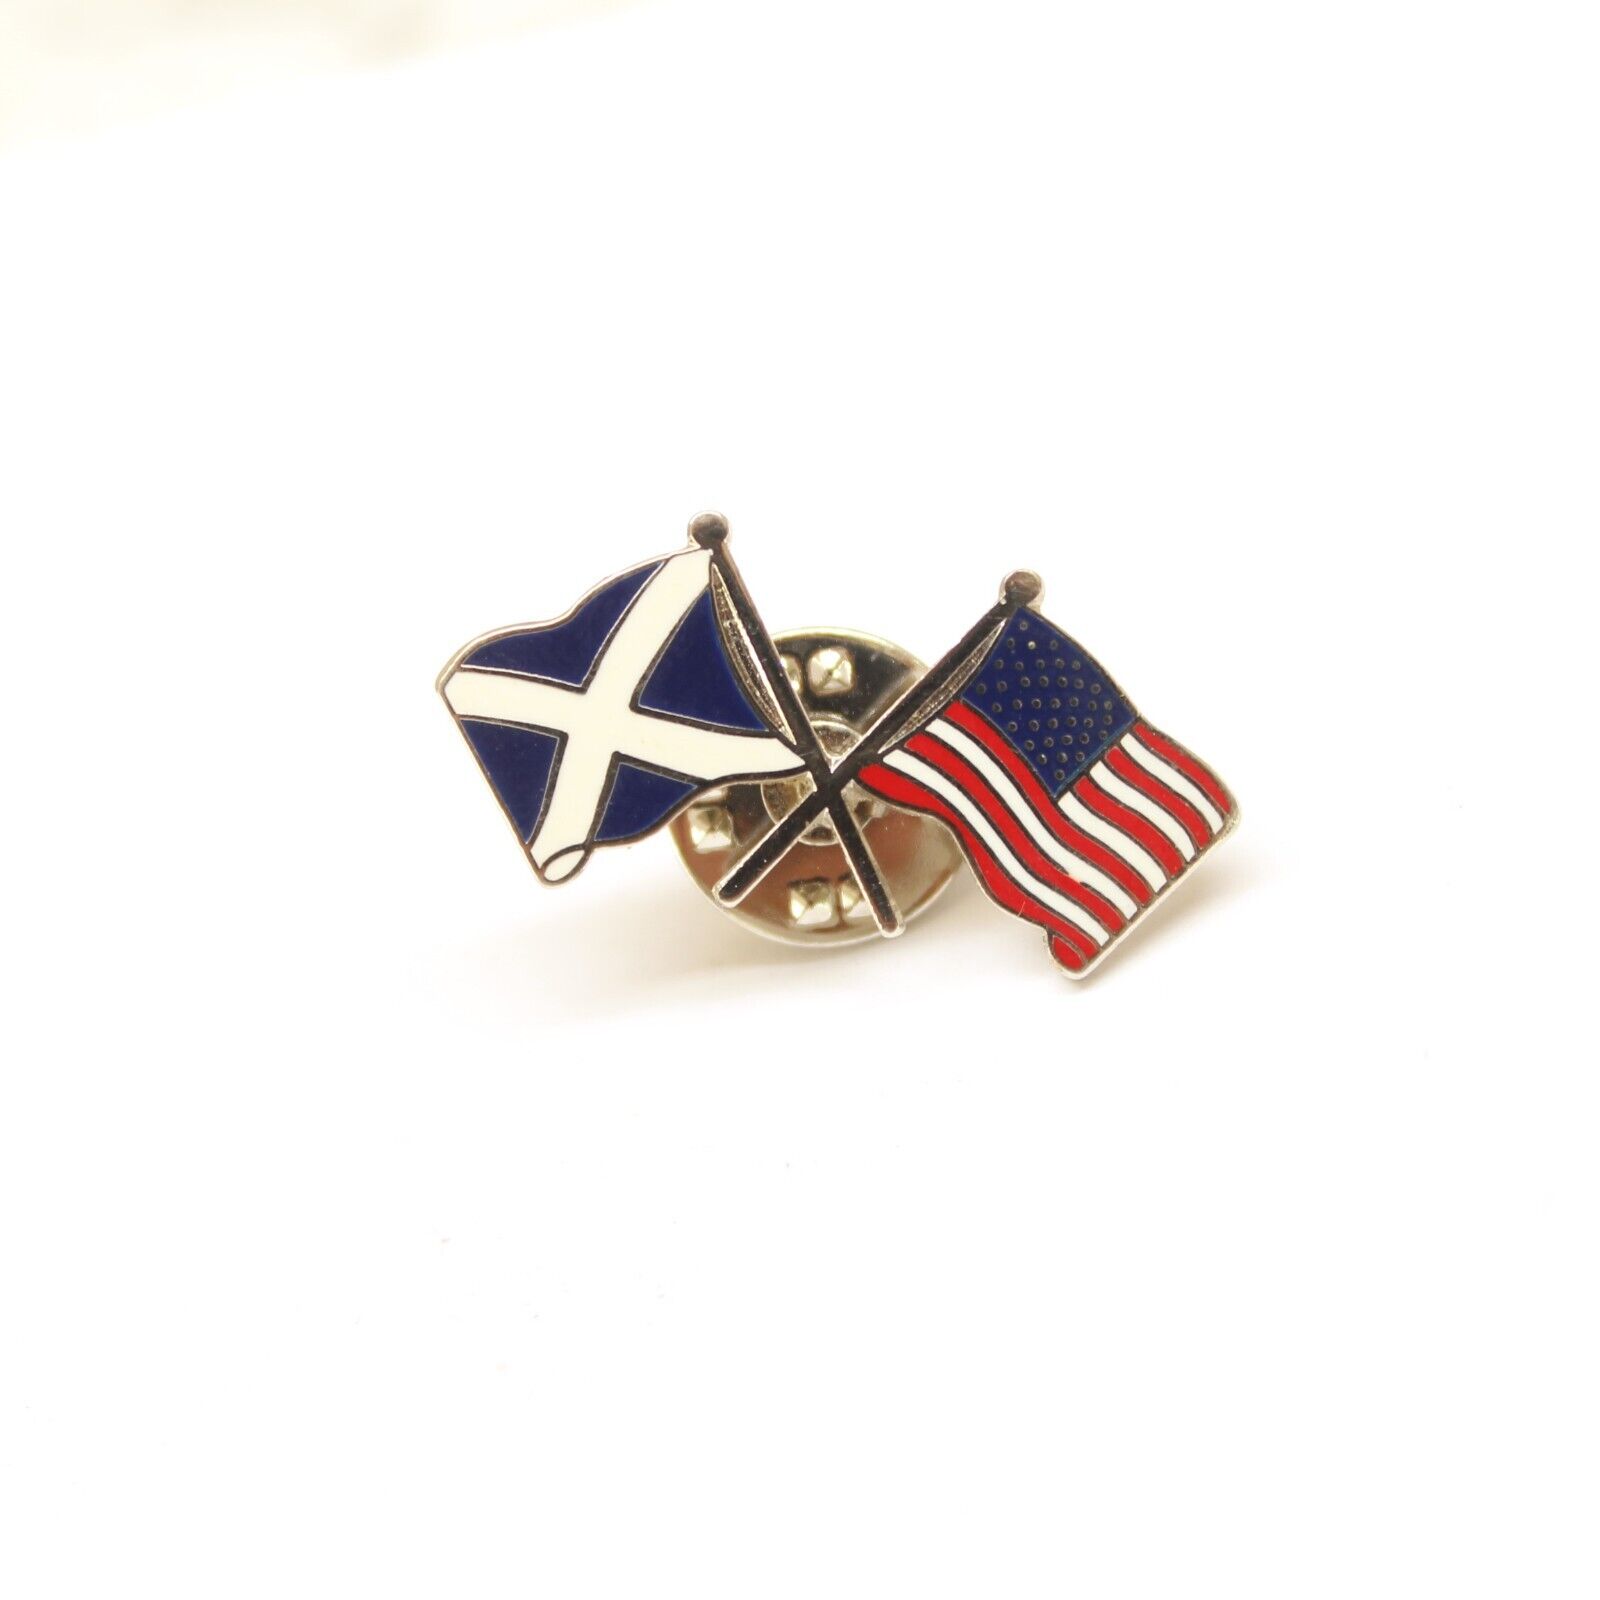 Scotland and USA Flags Pin Lapel Enamel Collectible Souvenir